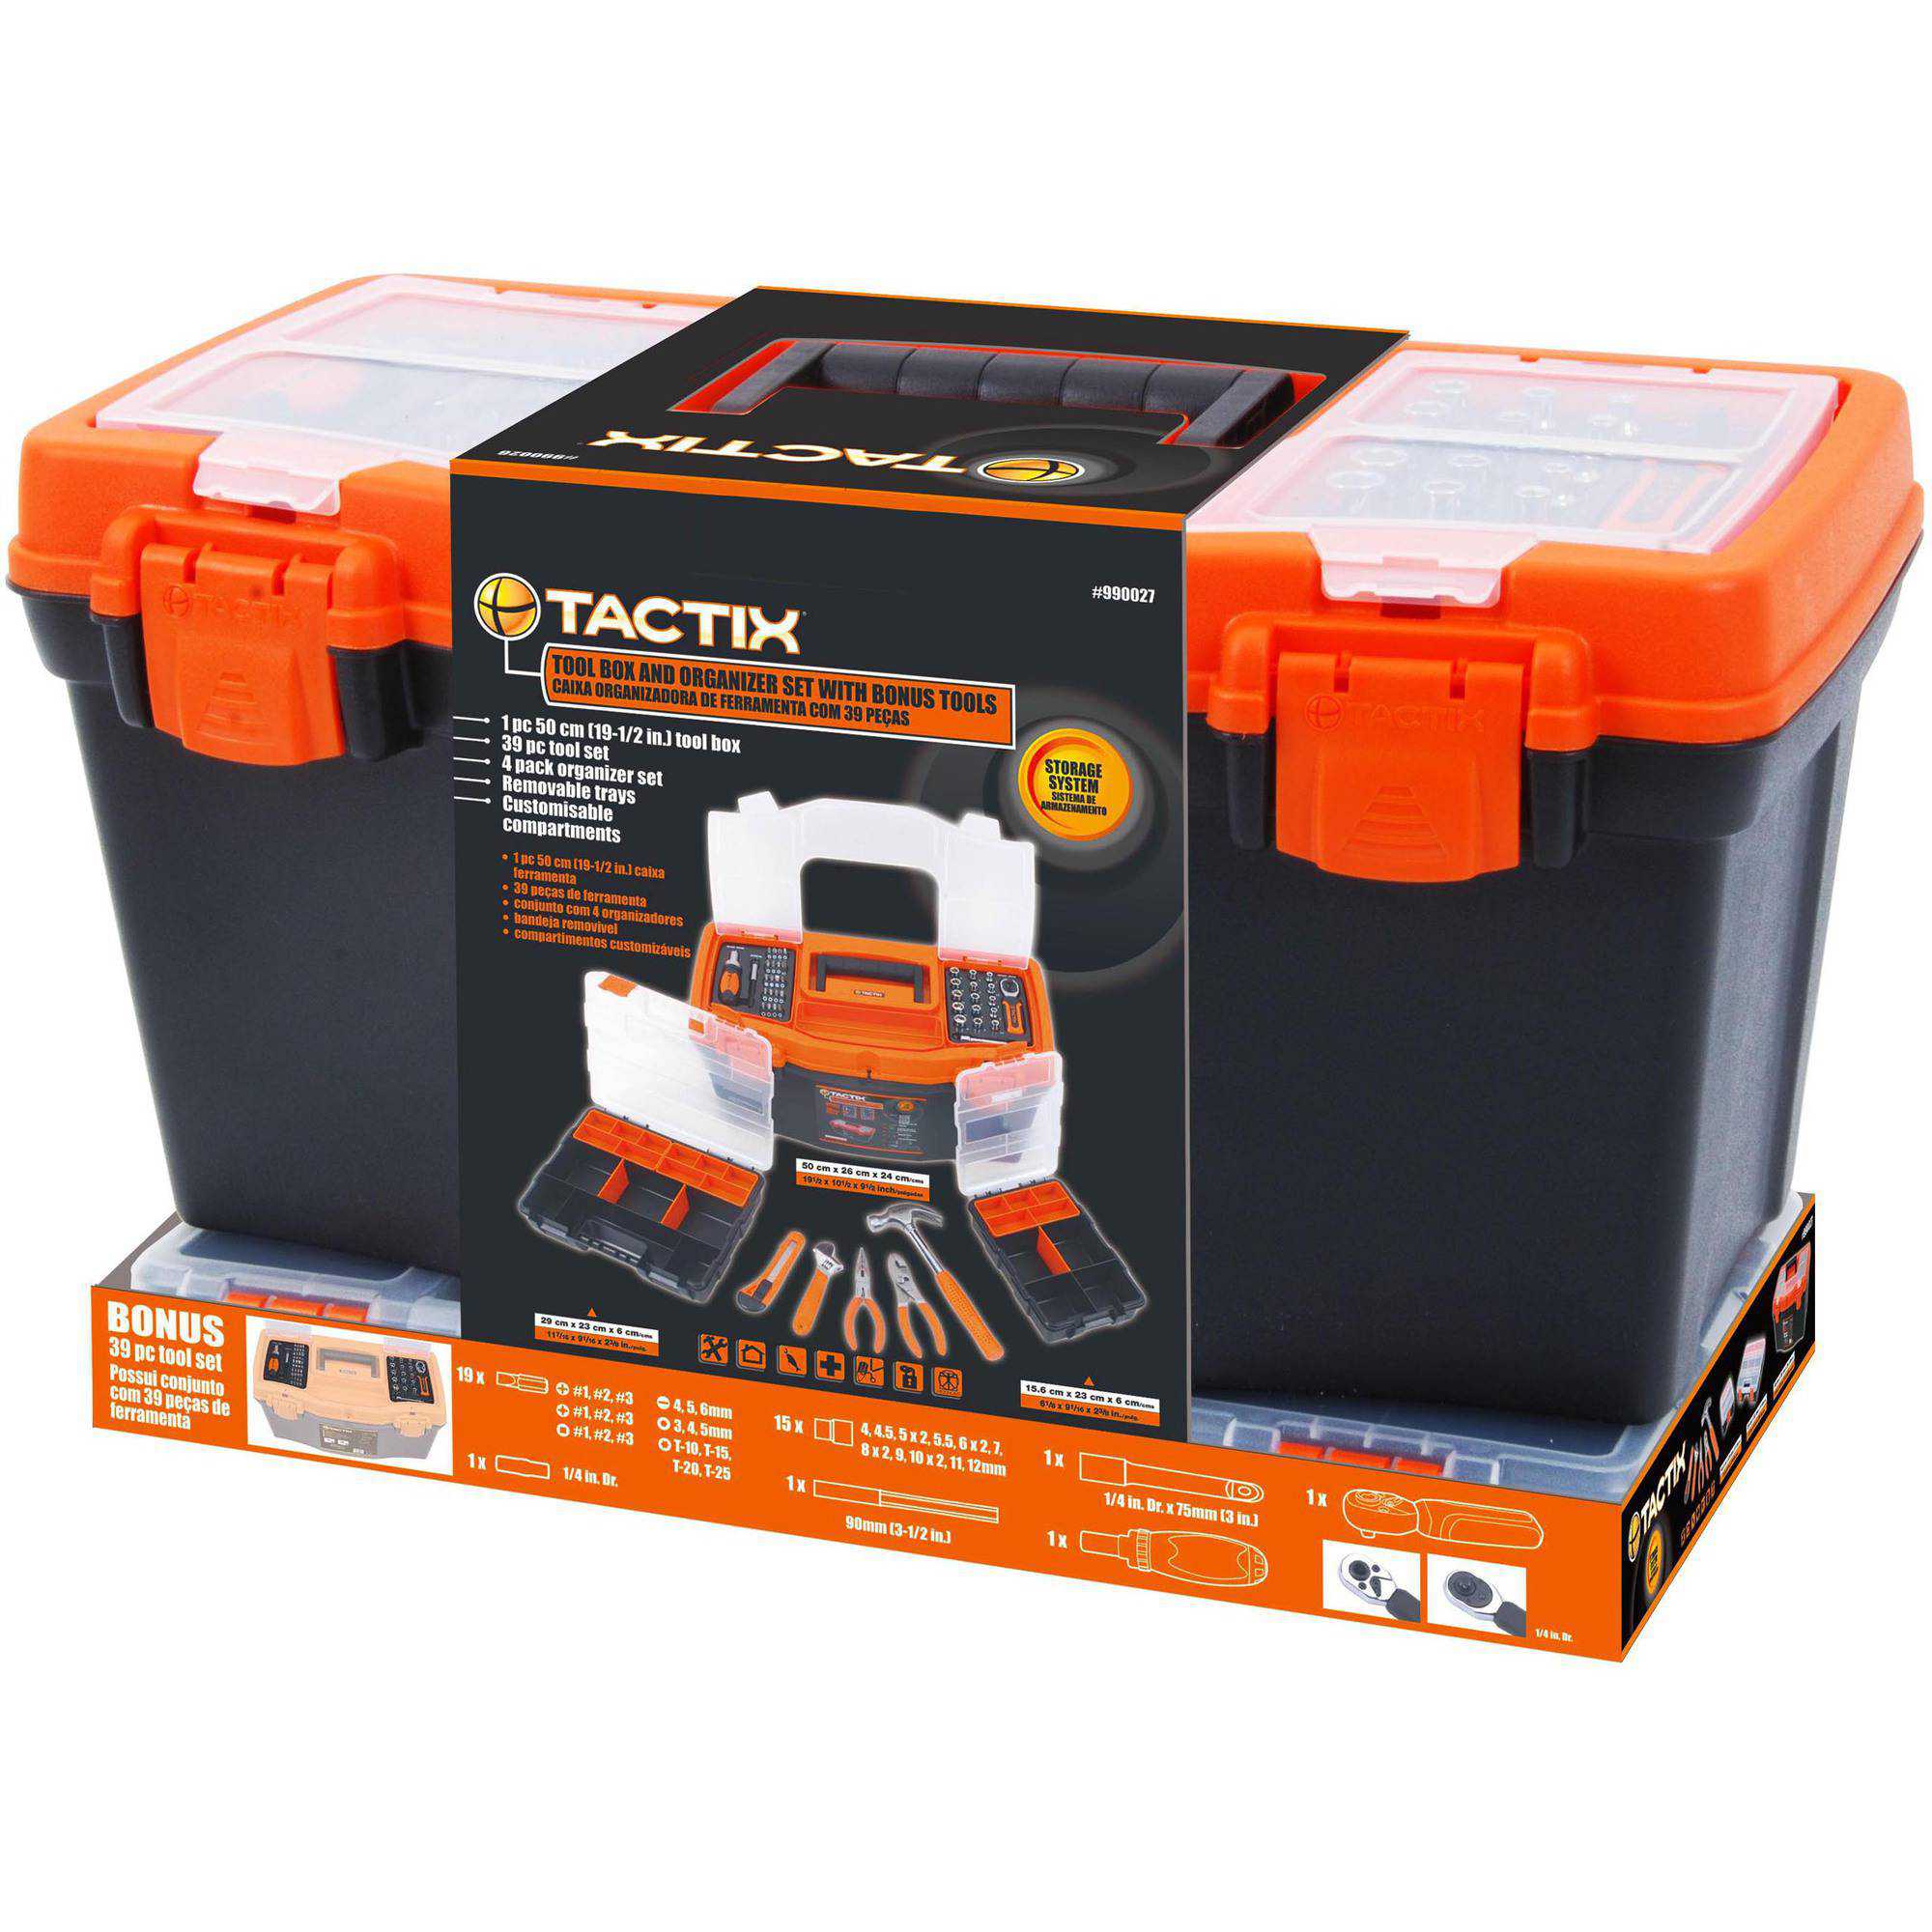 Tactix Toolbox with 47-Piece Tool Set